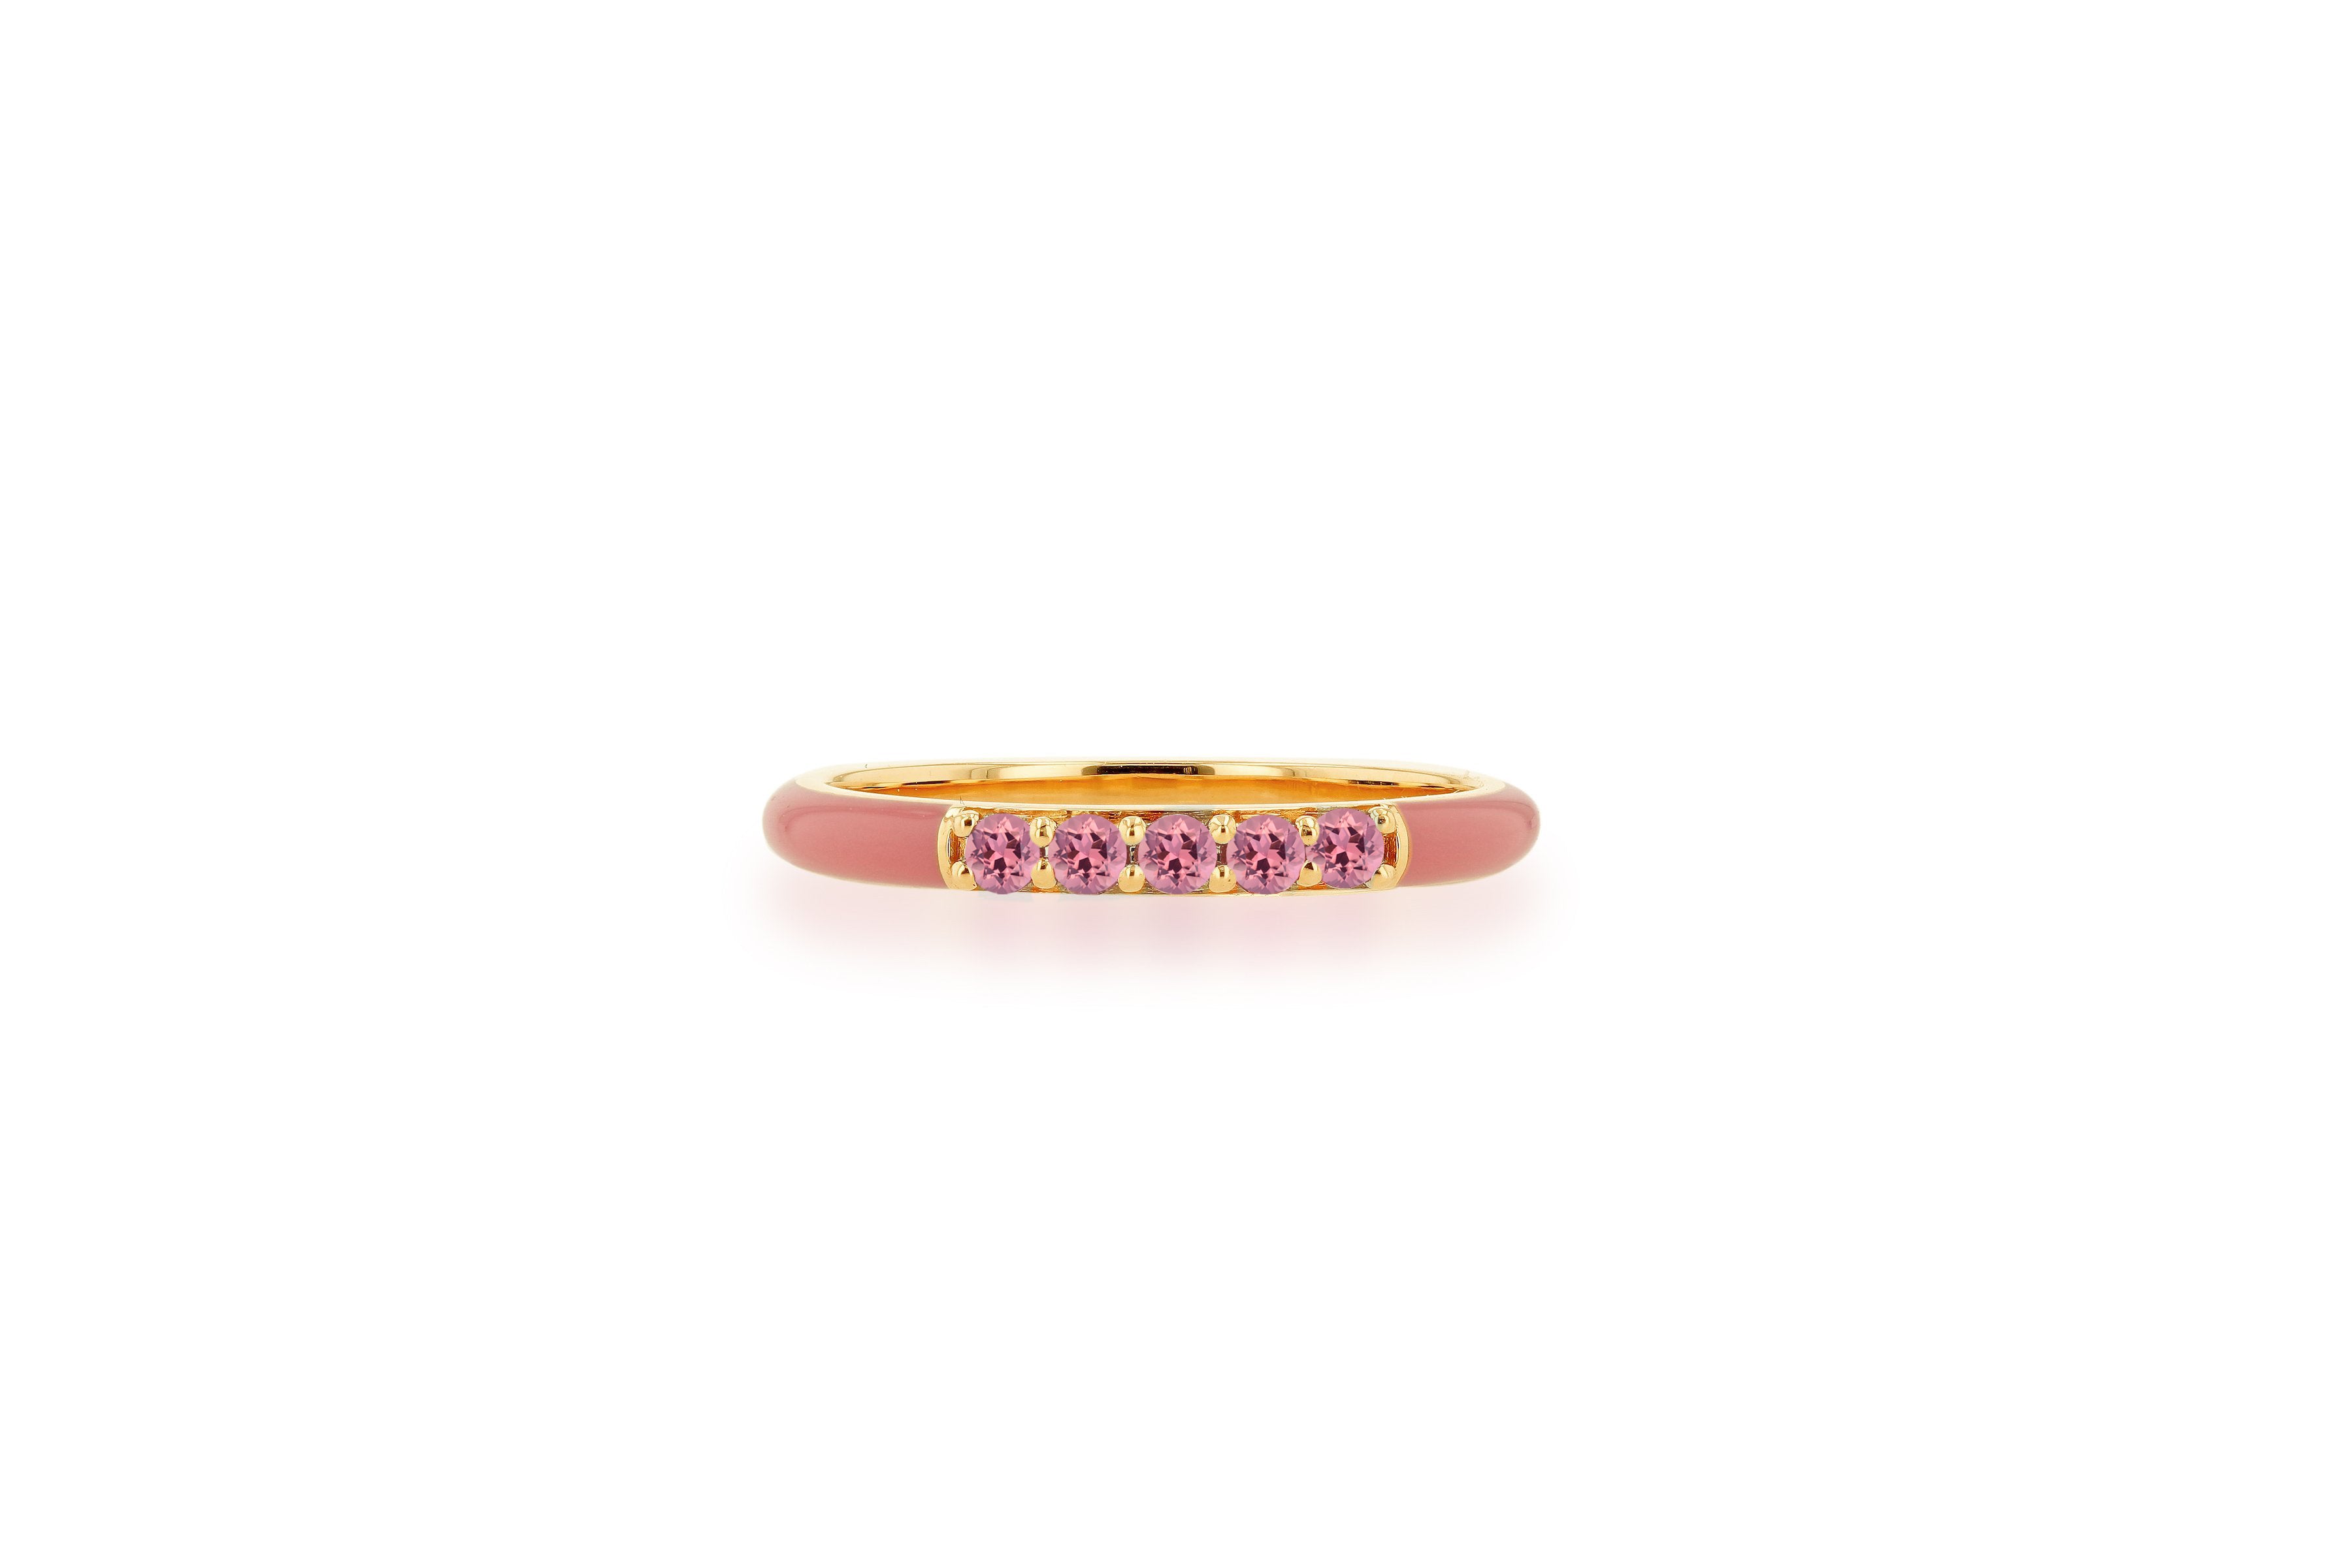 Light Pink Enamel and Pink Tourmaline Band Ring